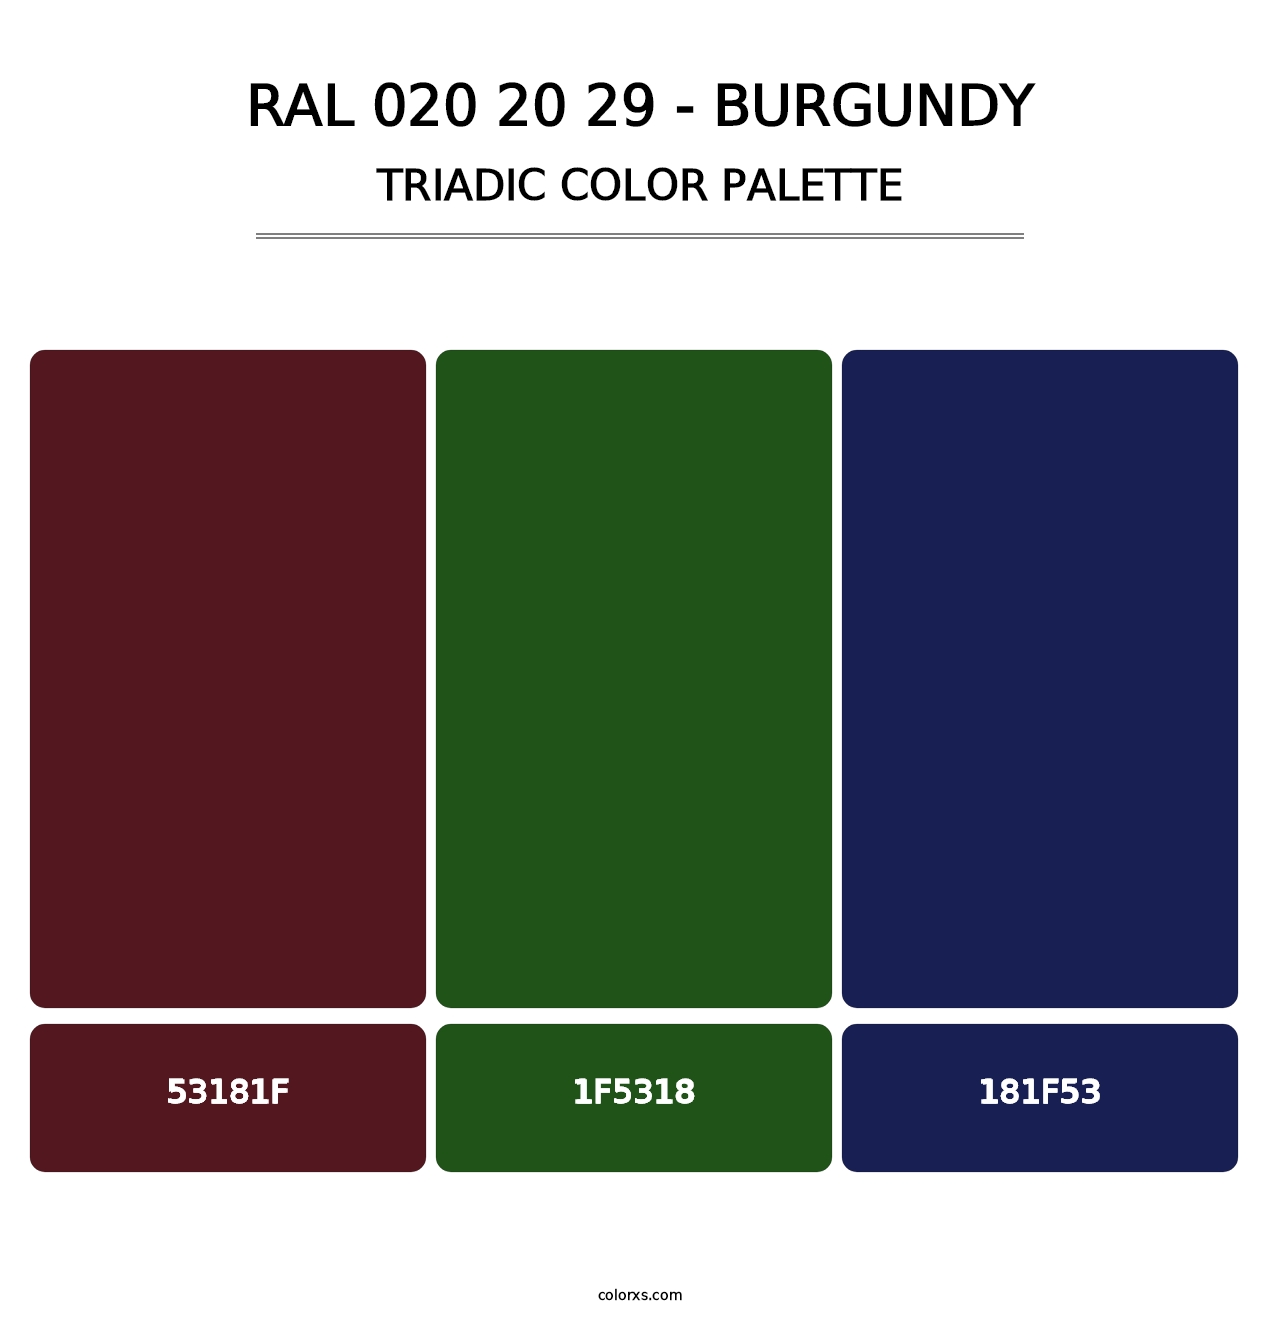 RAL 020 20 29 - Burgundy - Triadic Color Palette